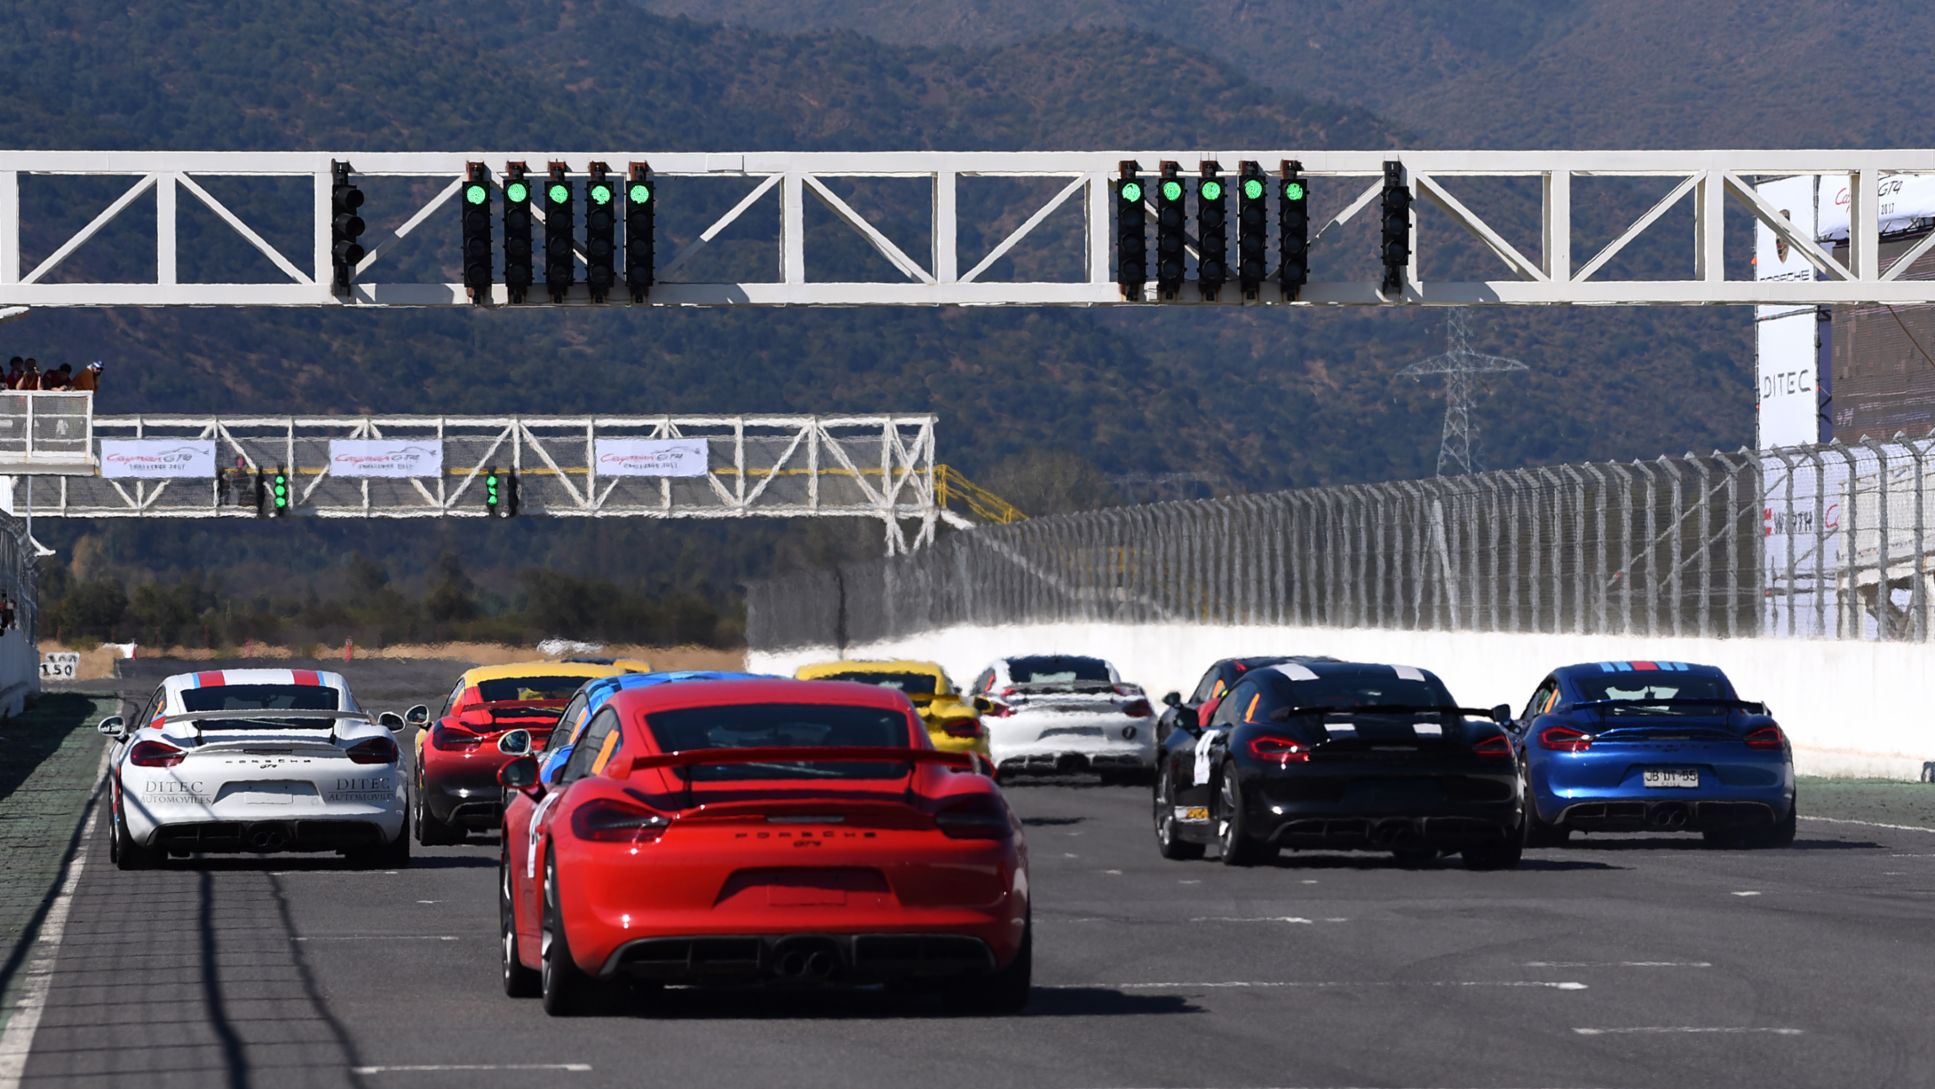 Segunda fecha del Cayman GT4 Challenge en Chile - Porsche te invita a vivir una jornada de velocidad y adrenalina